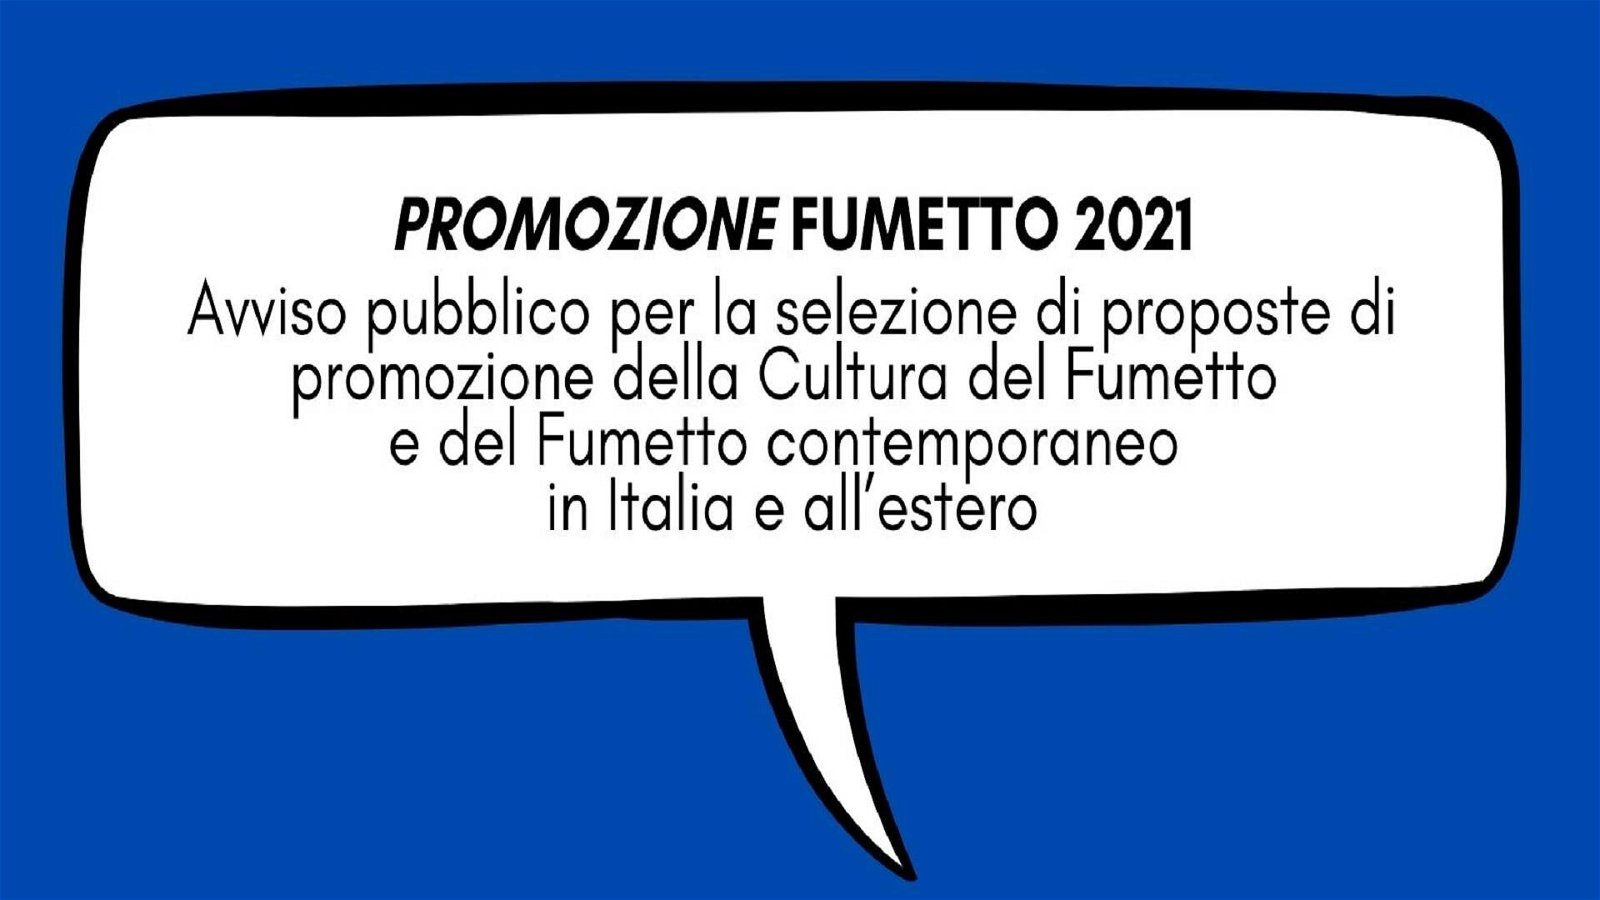 Immagine di Promozione Fumetto 2021, il bando da oltre 600.000 euro per il fumetto dal MiC